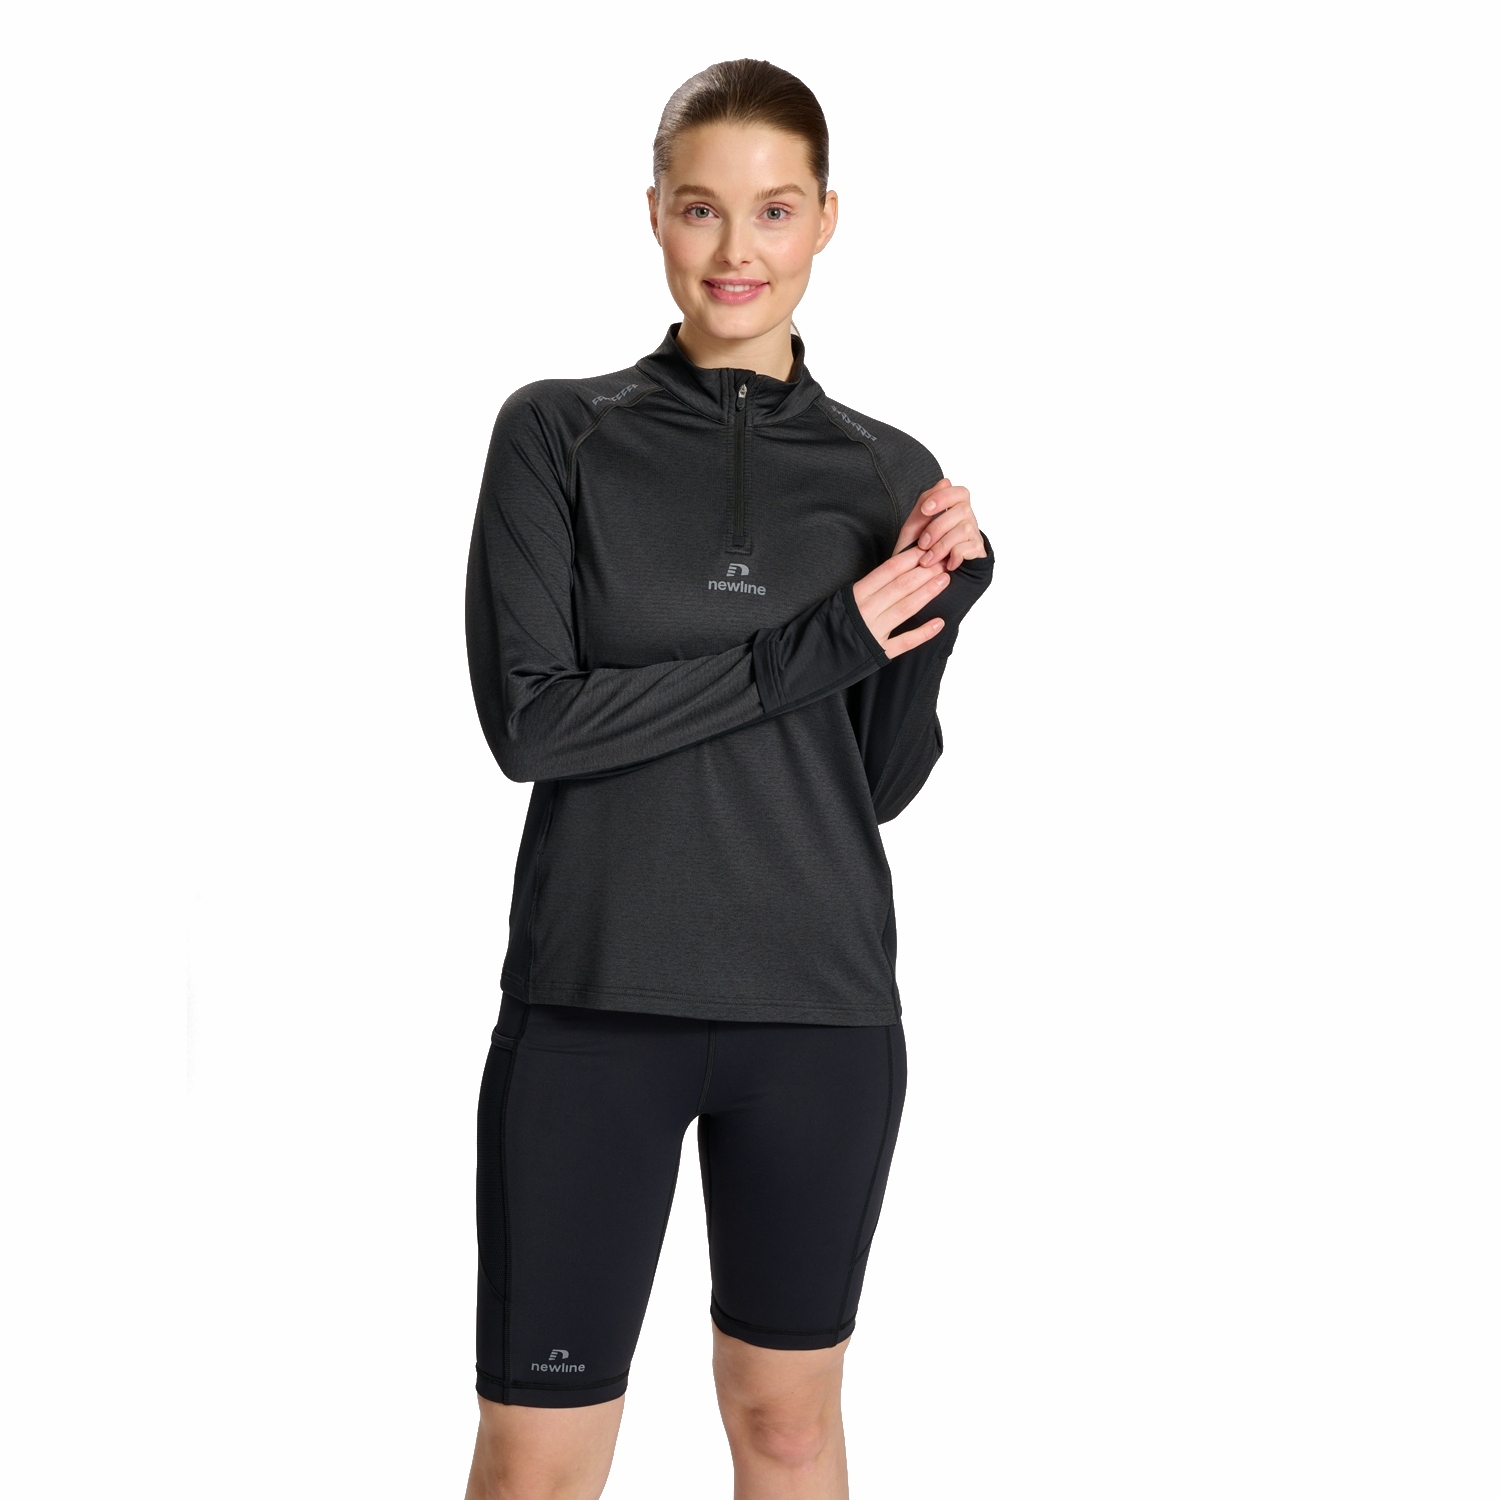 Productfoto van Newline Mesa 1/2 Zip Dames Shirt met Lange Mouwen - black melange